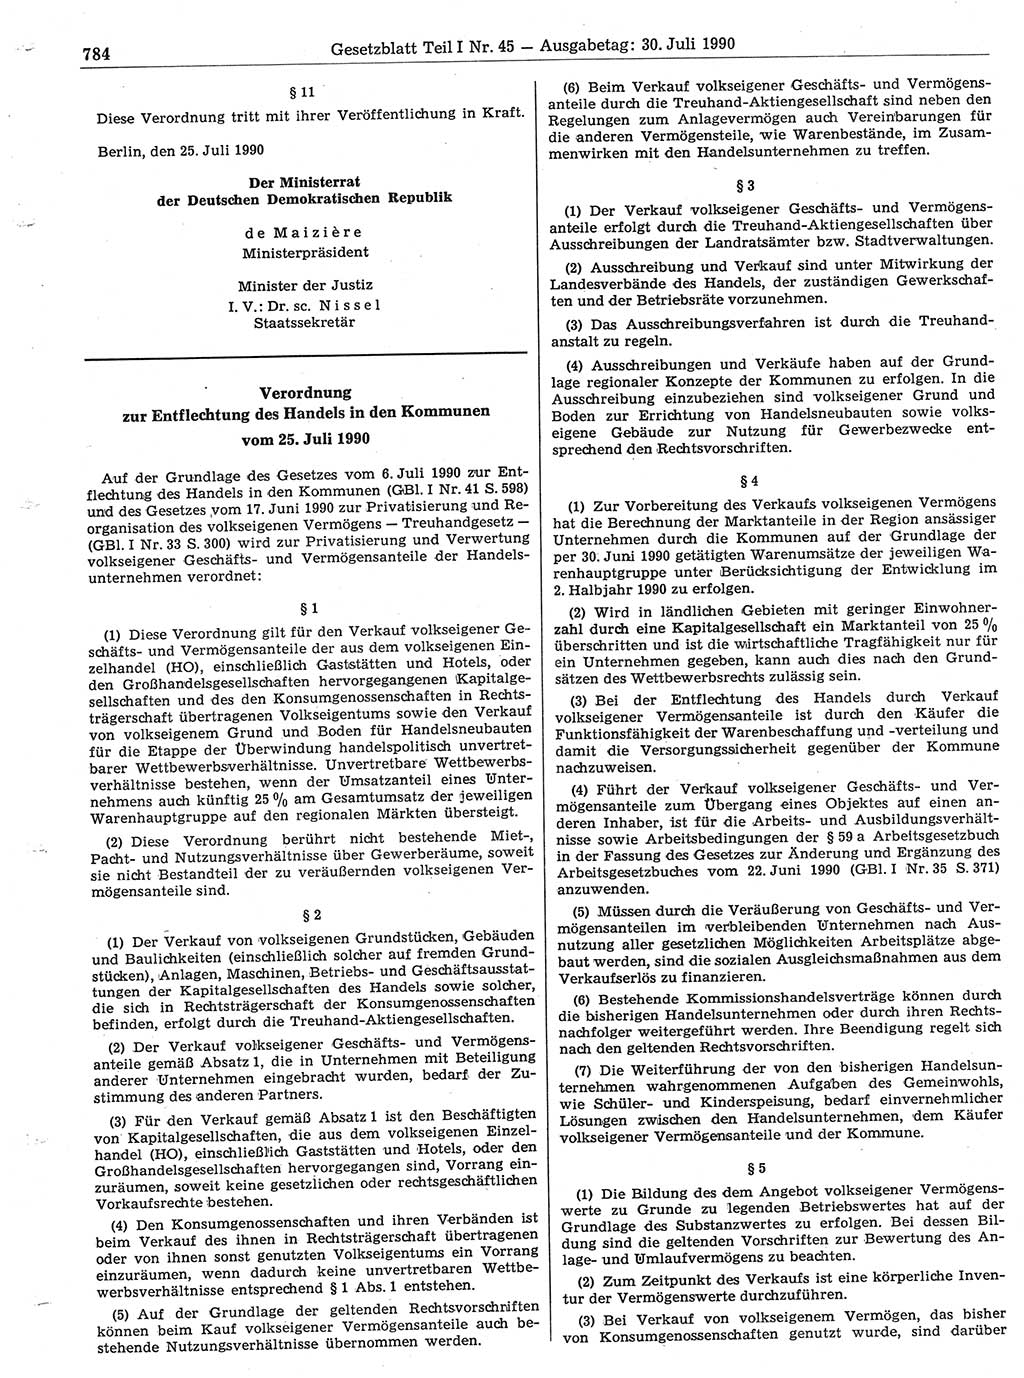 Gesetzblatt (GBl.) der Deutschen Demokratischen Republik (DDR) Teil Ⅰ 1990, Seite 784 (GBl. DDR Ⅰ 1990, S. 784)